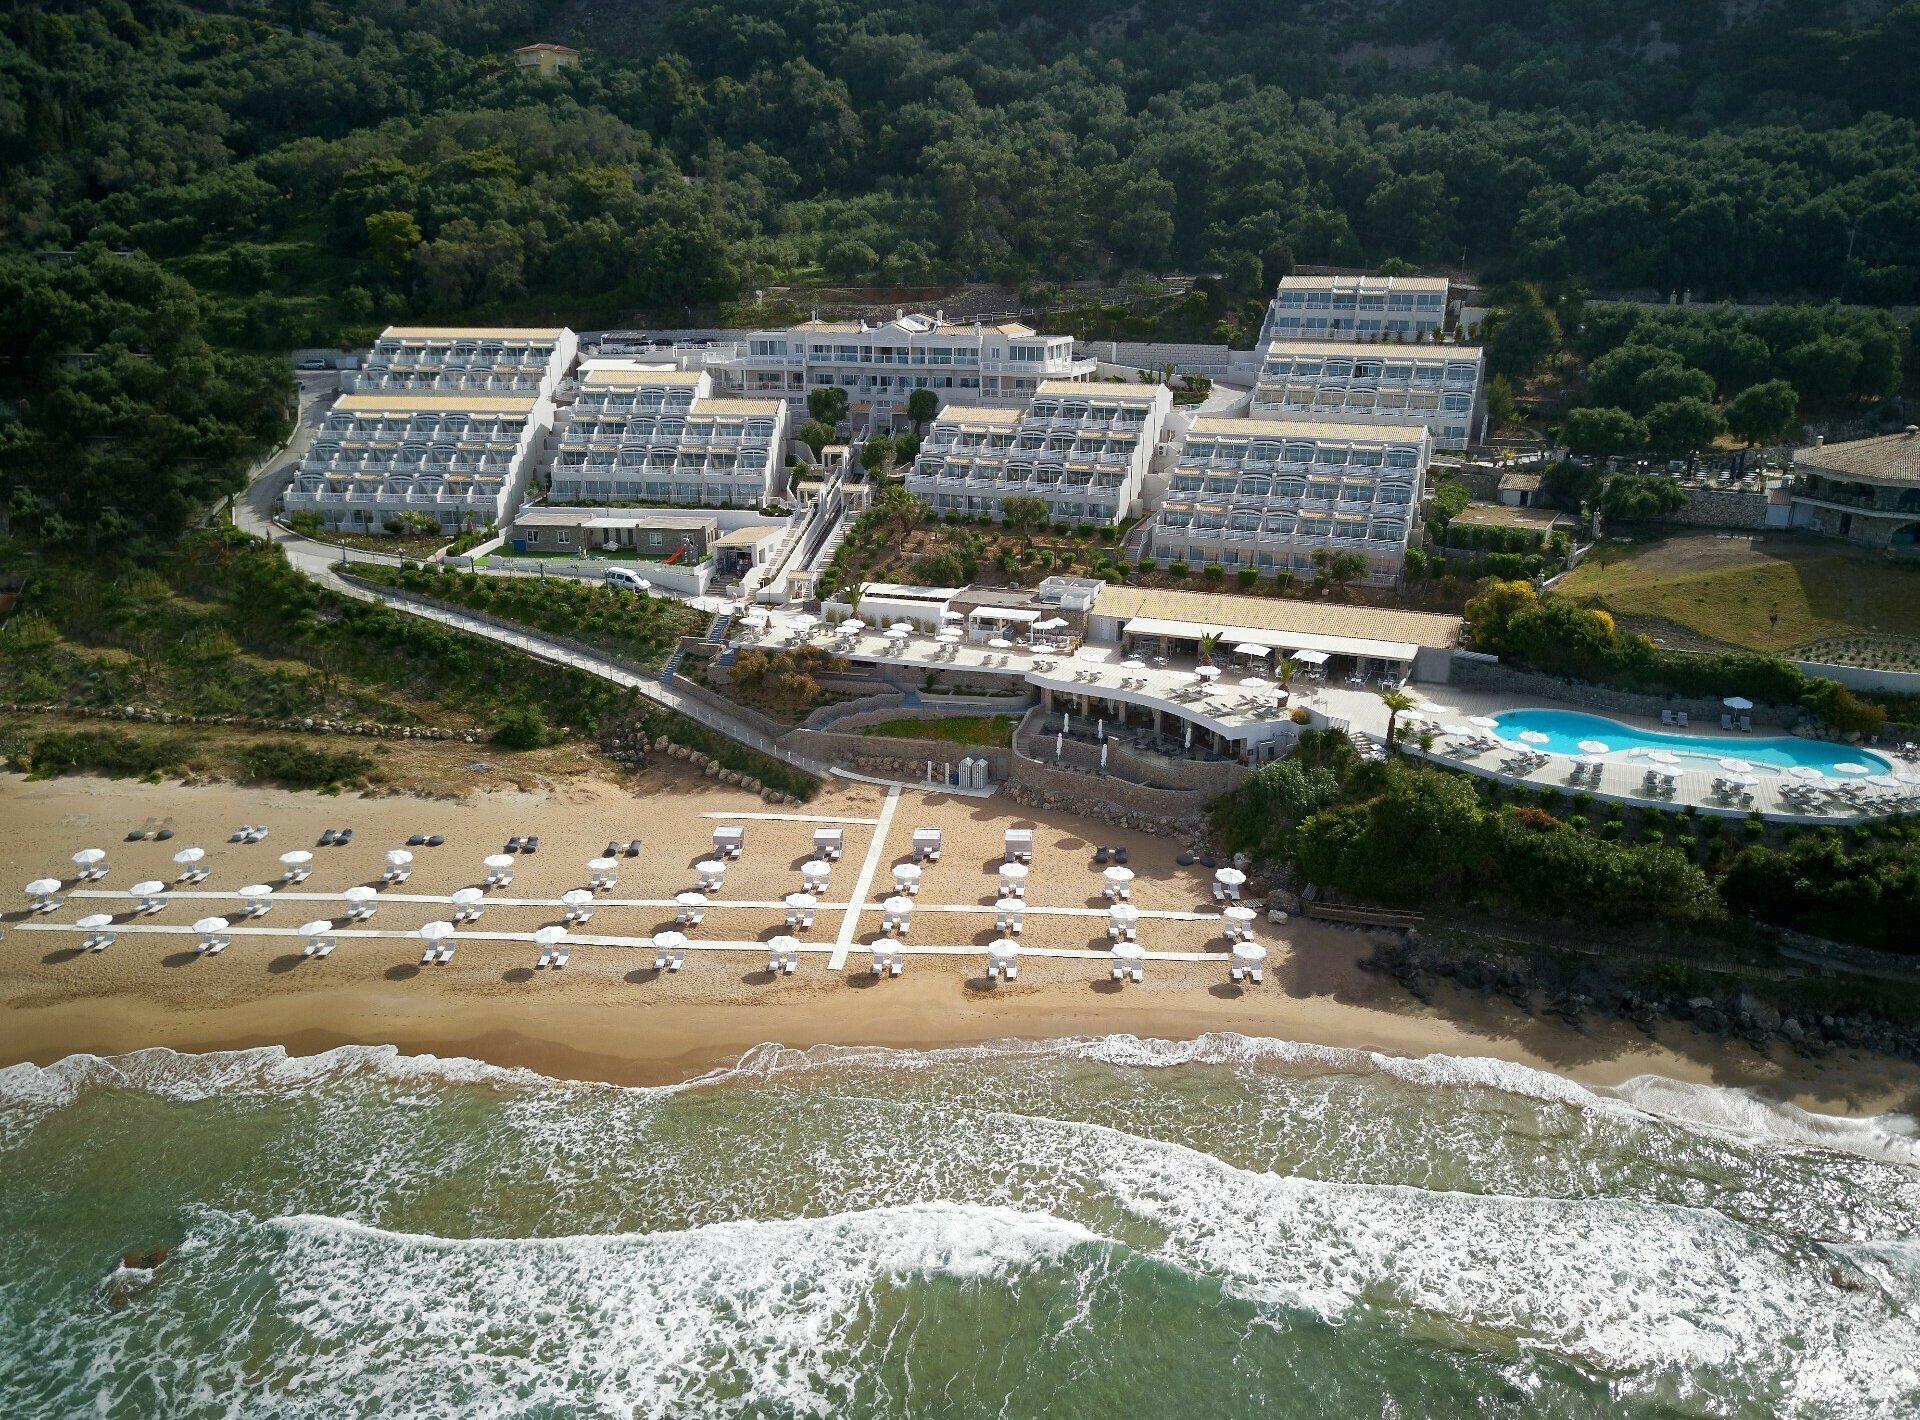 ISholidays Corfu PELEKAS Junior Suite Balcony and Panoramic Sea View